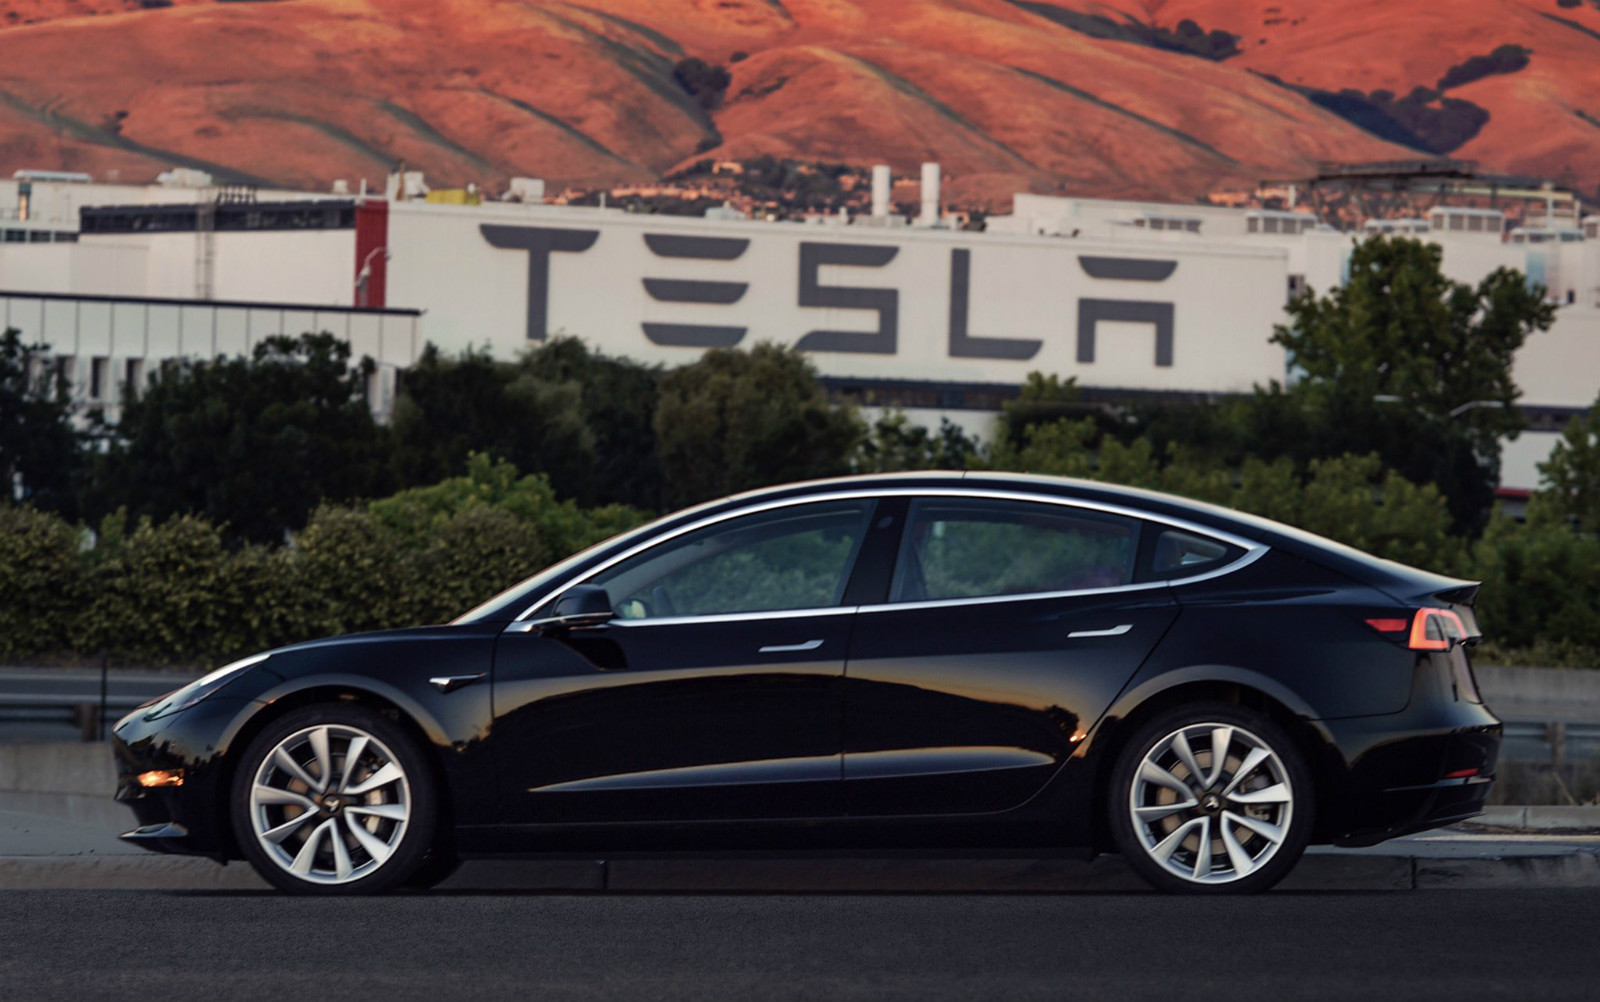 Obrázek nového "levného" Modelu 3 automobilky Tesla zveřejnil její šéf Elon Musk začátkem července 2017. Zdroj: twitter